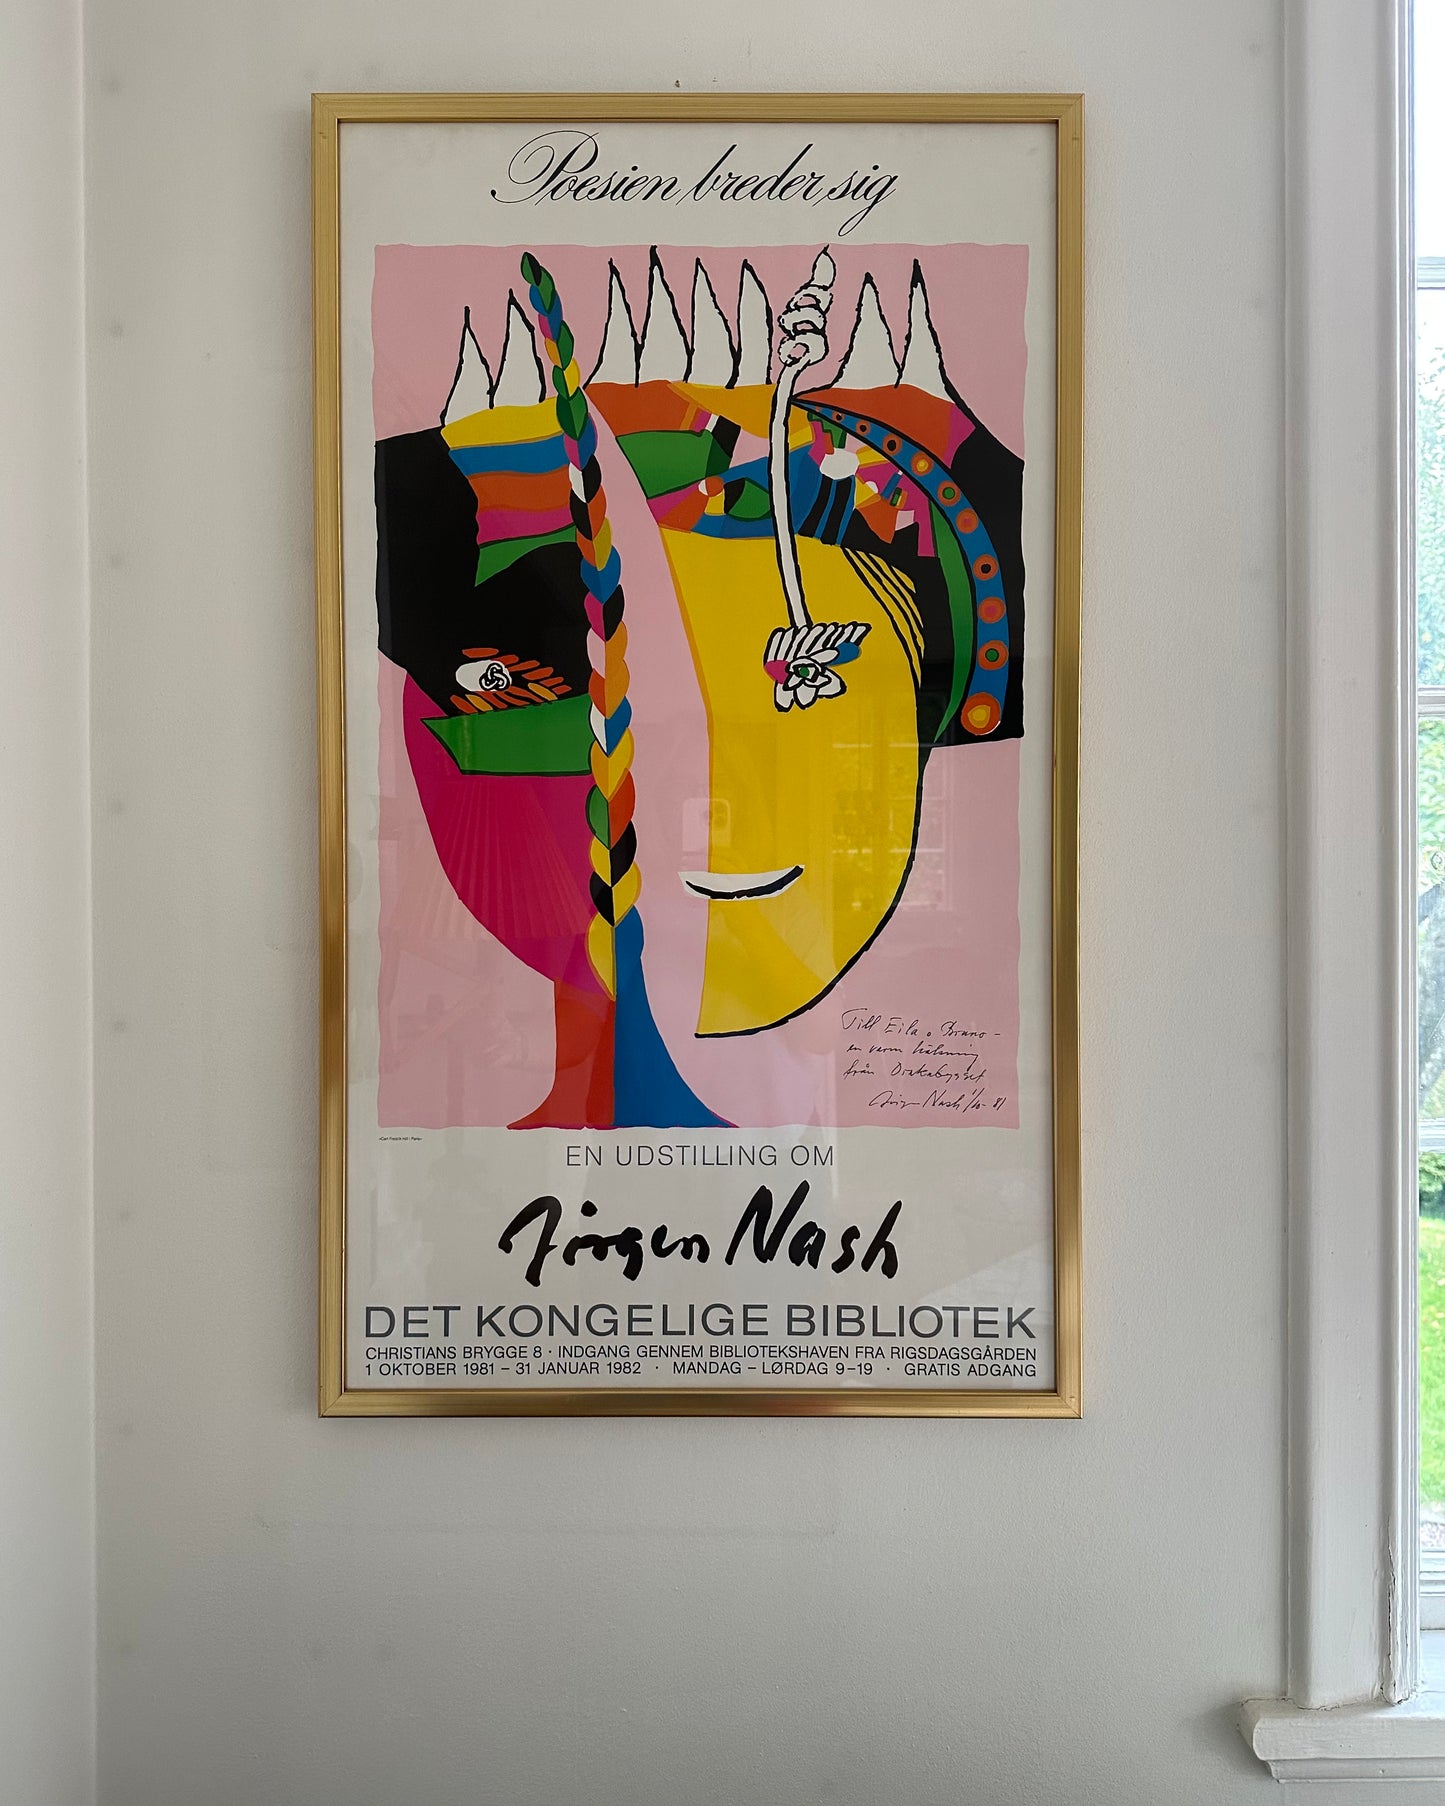 Large Exhibition Poster - Jörgen Nash